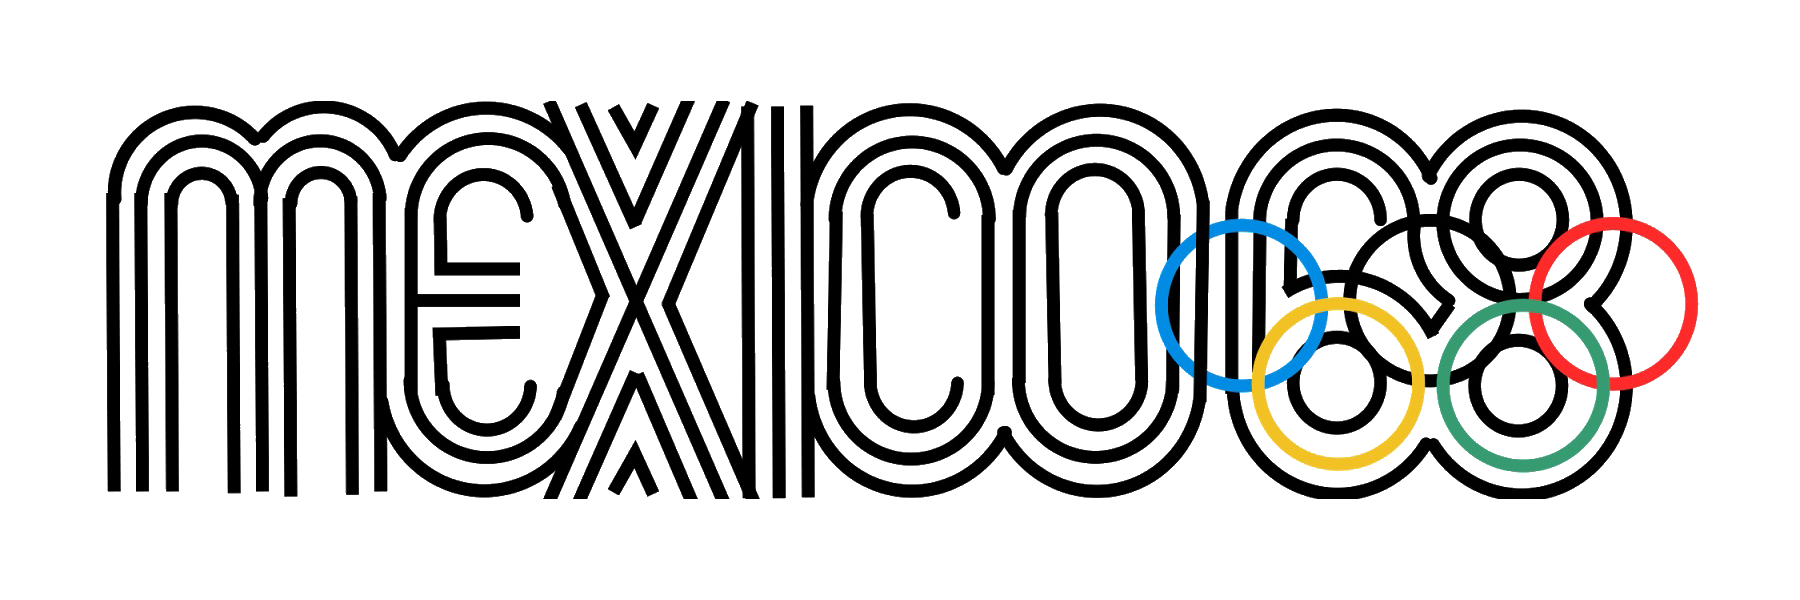 Mexico – Summer Olympics 1968